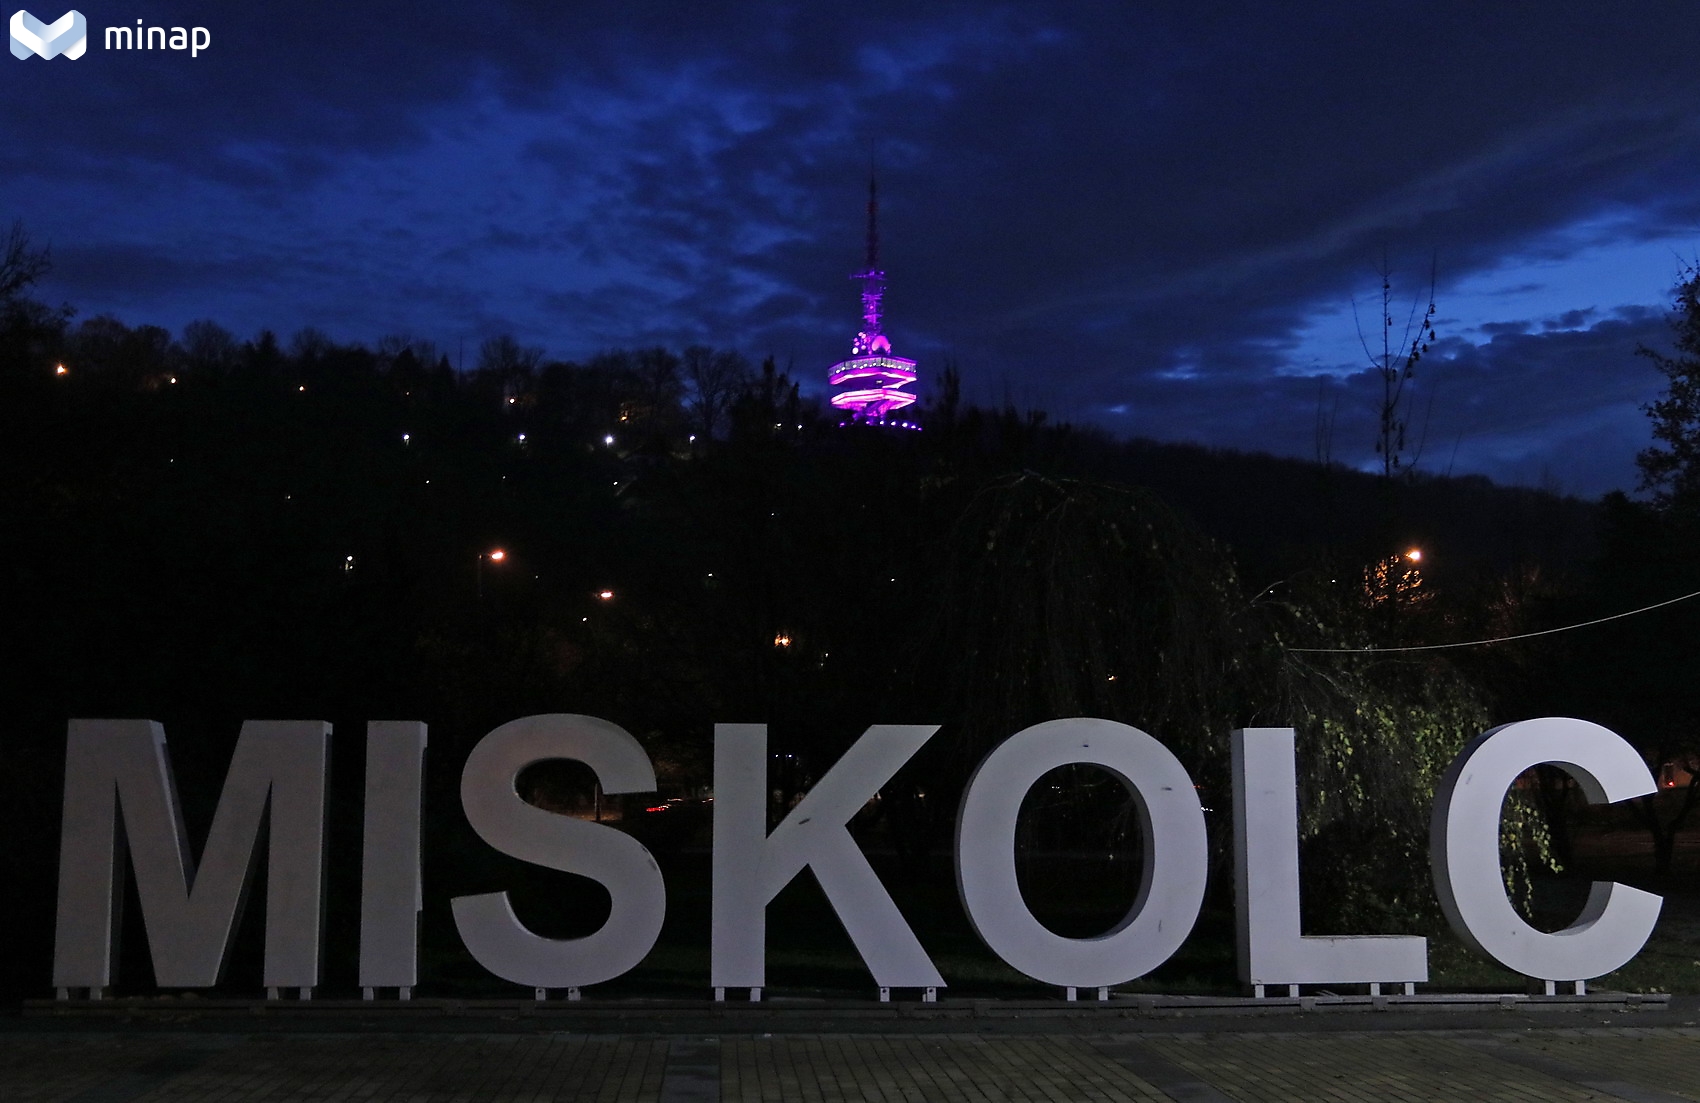 A Miskolc felirat mögött az Avasi kilátó lila színben megvilágítva